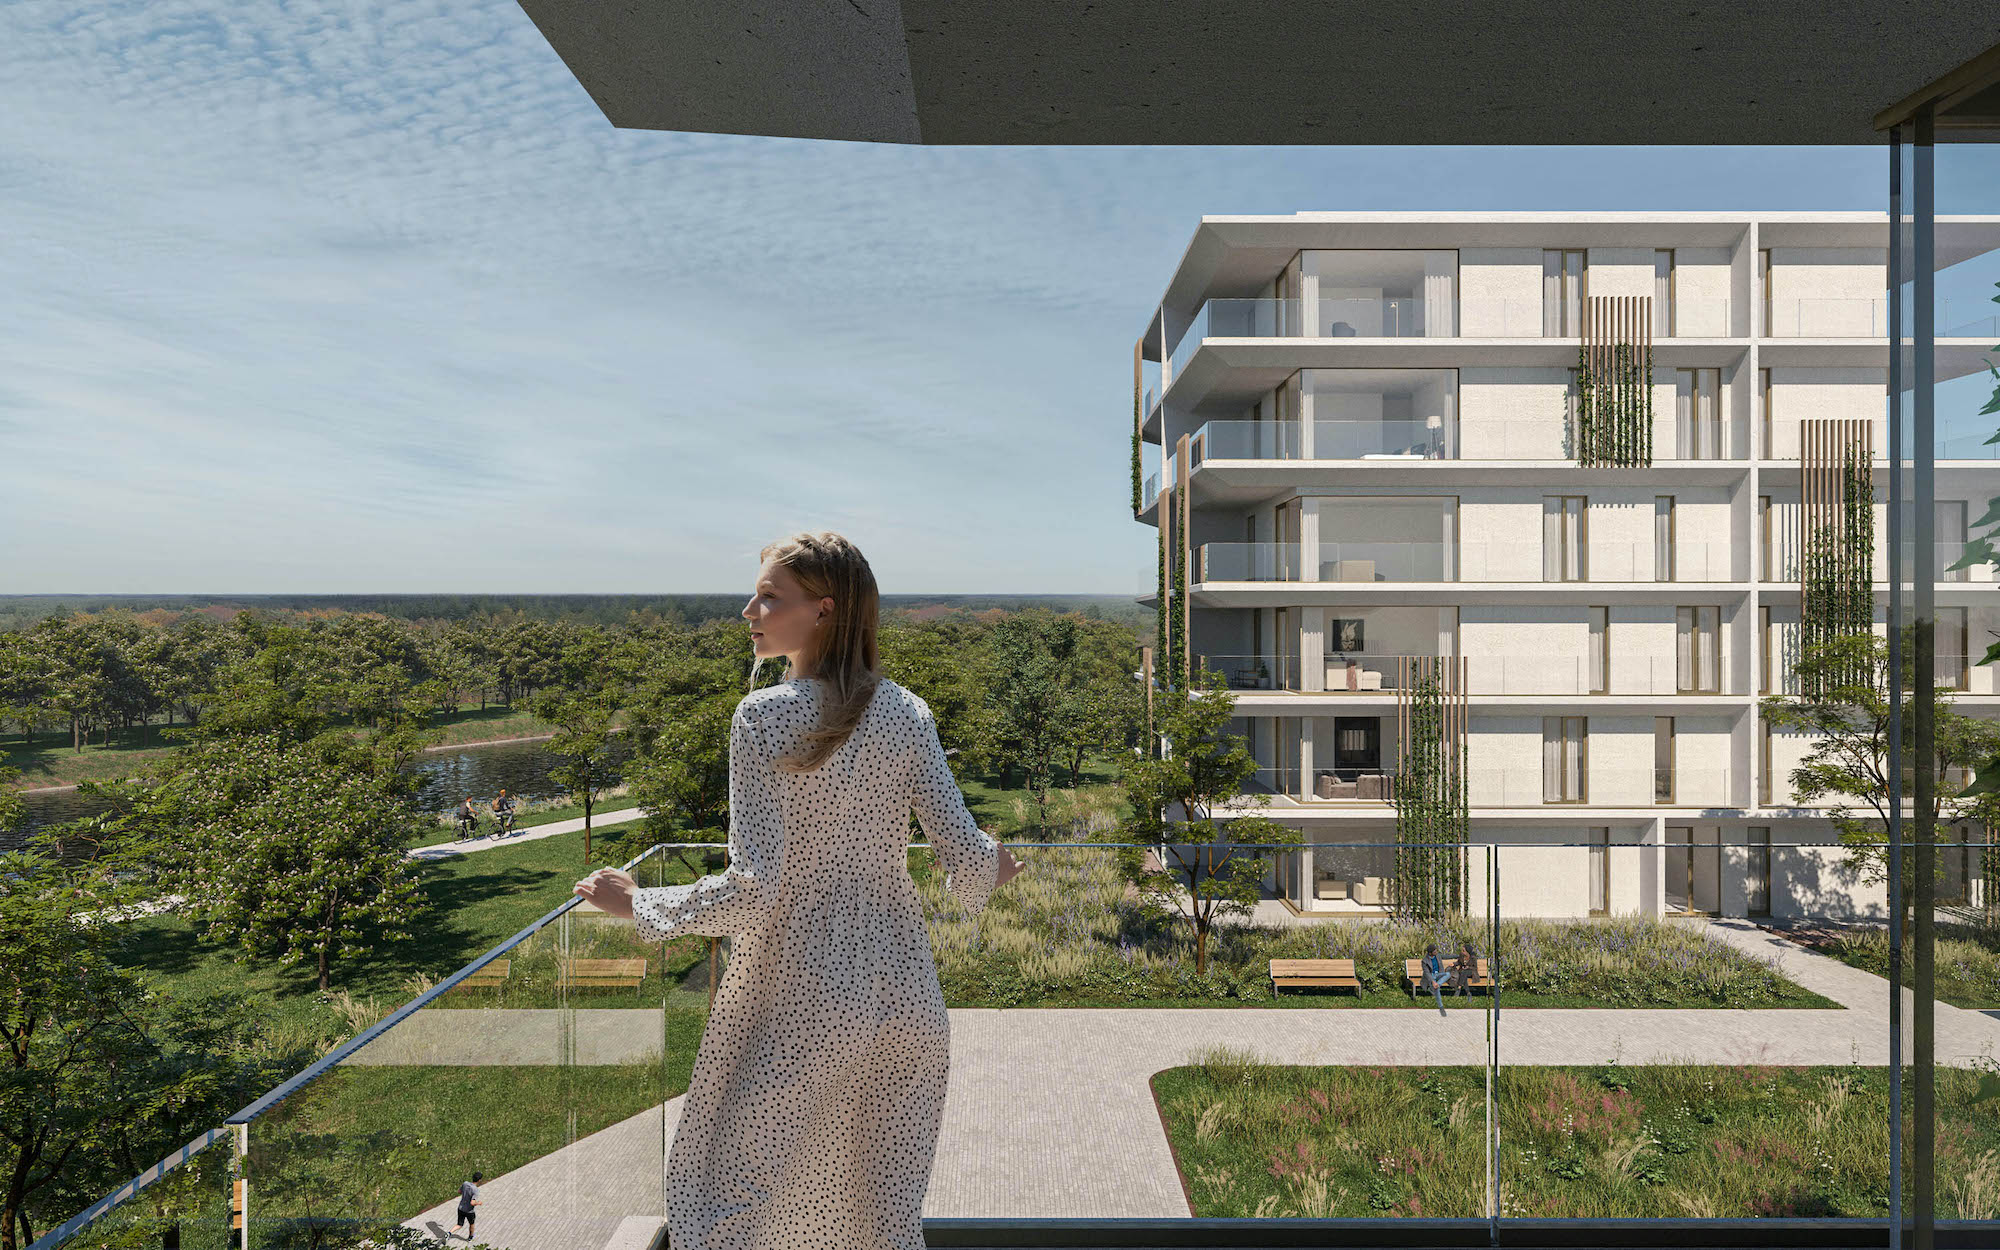 Waterlinie woonproject Neerpelt wonen aan het water passantenhaven renders terras balkon uitzicht groen kanaal